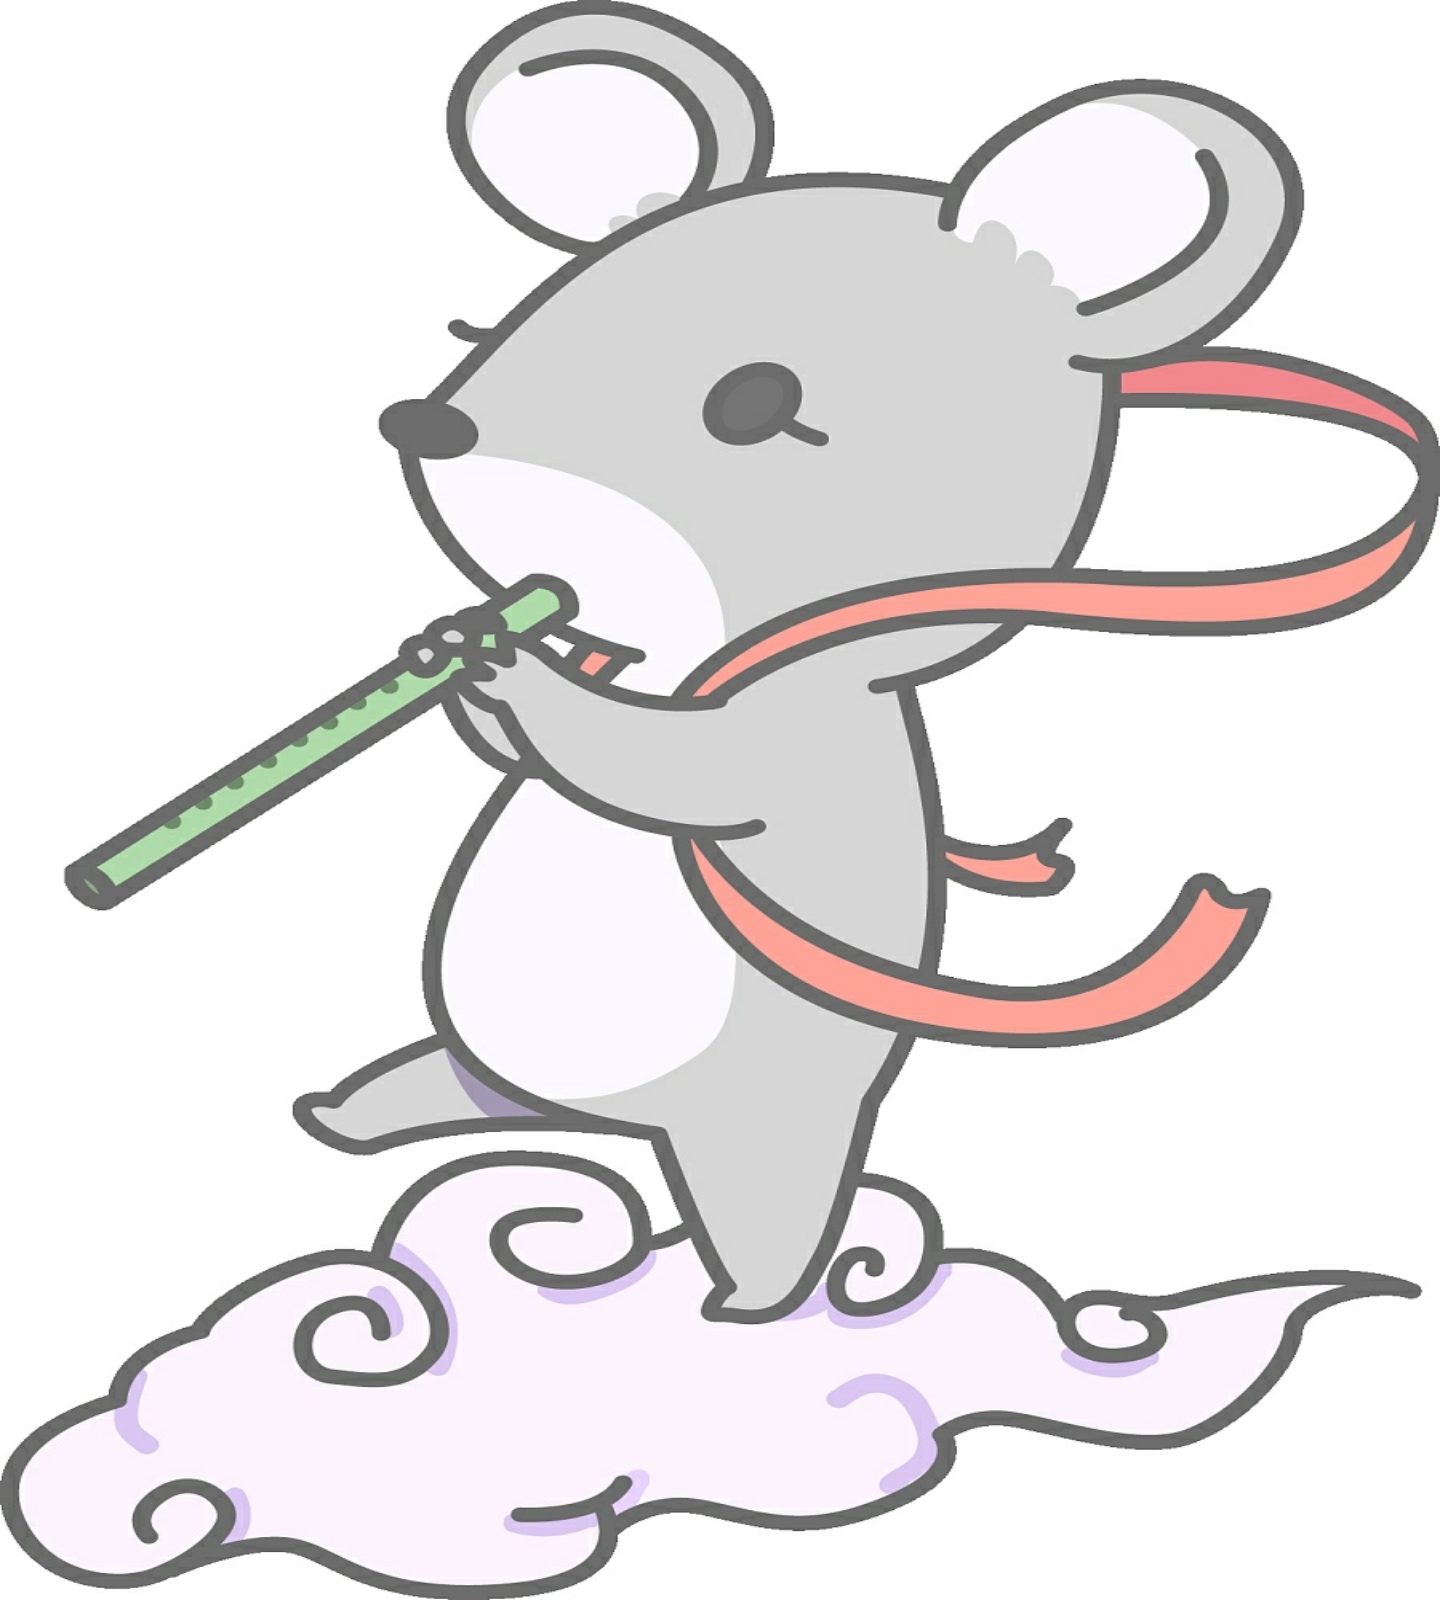 能杰·zid*十二生肖卡通形象设计——鼠